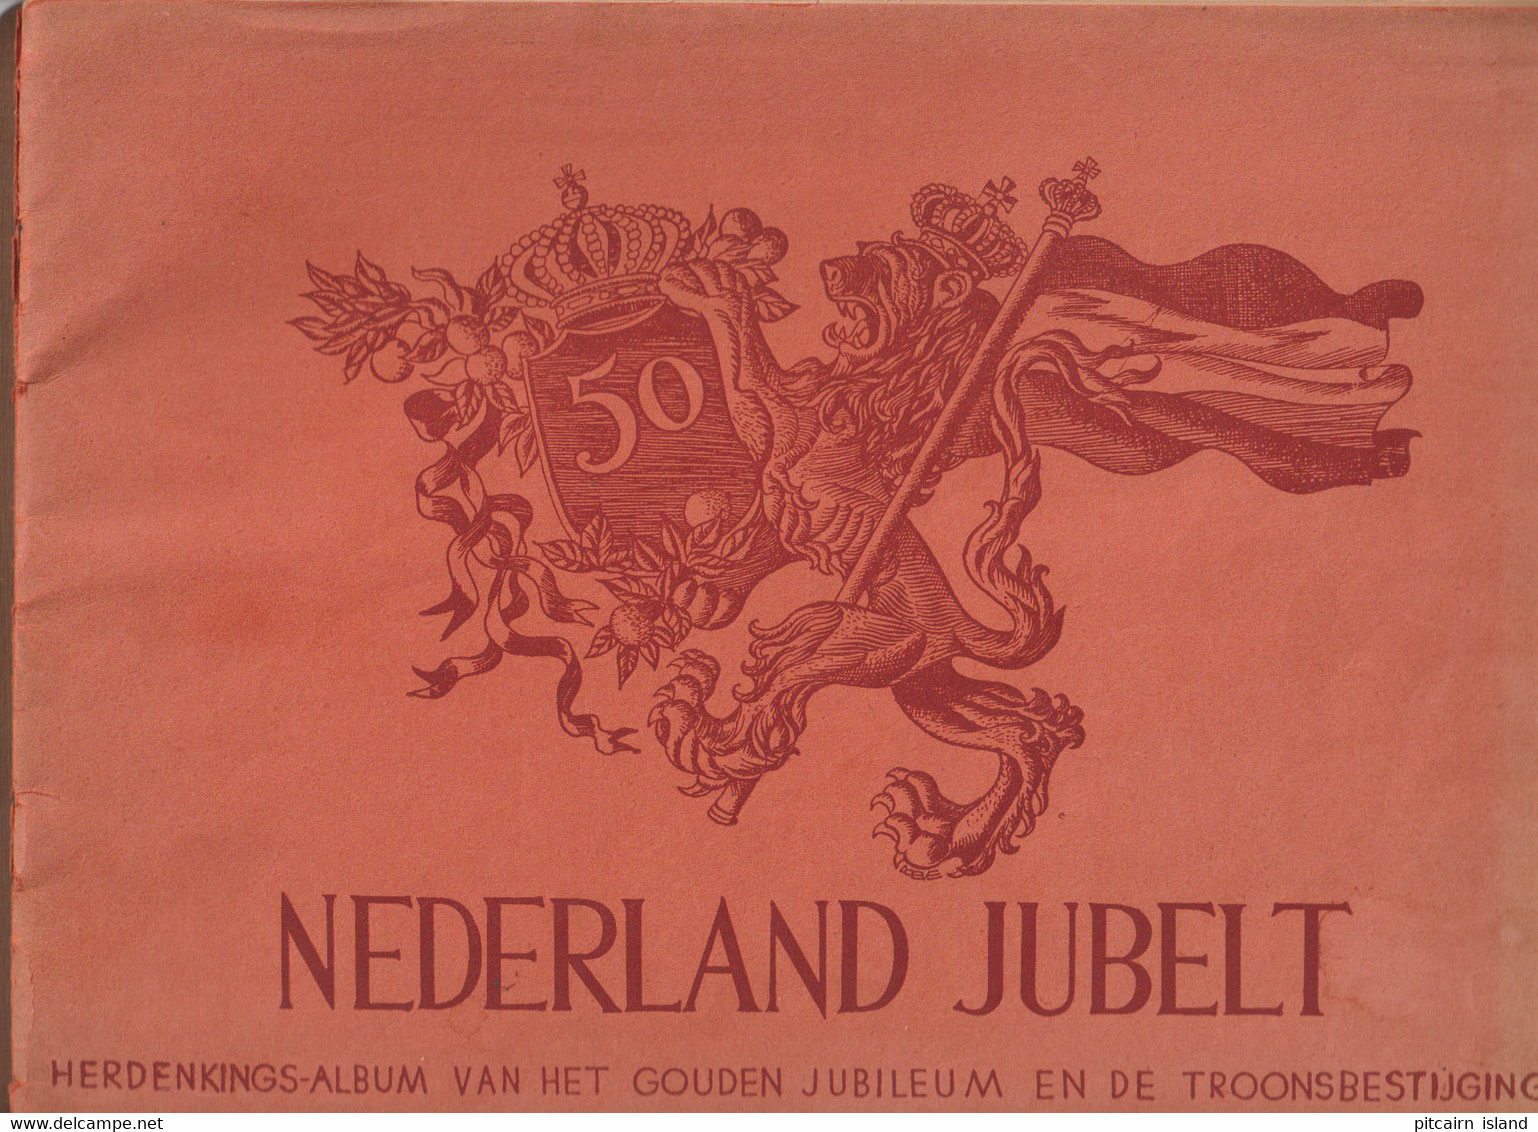 Nederland Jubelt Herdenkingsalbum Troonbestijging 1948 - Antique